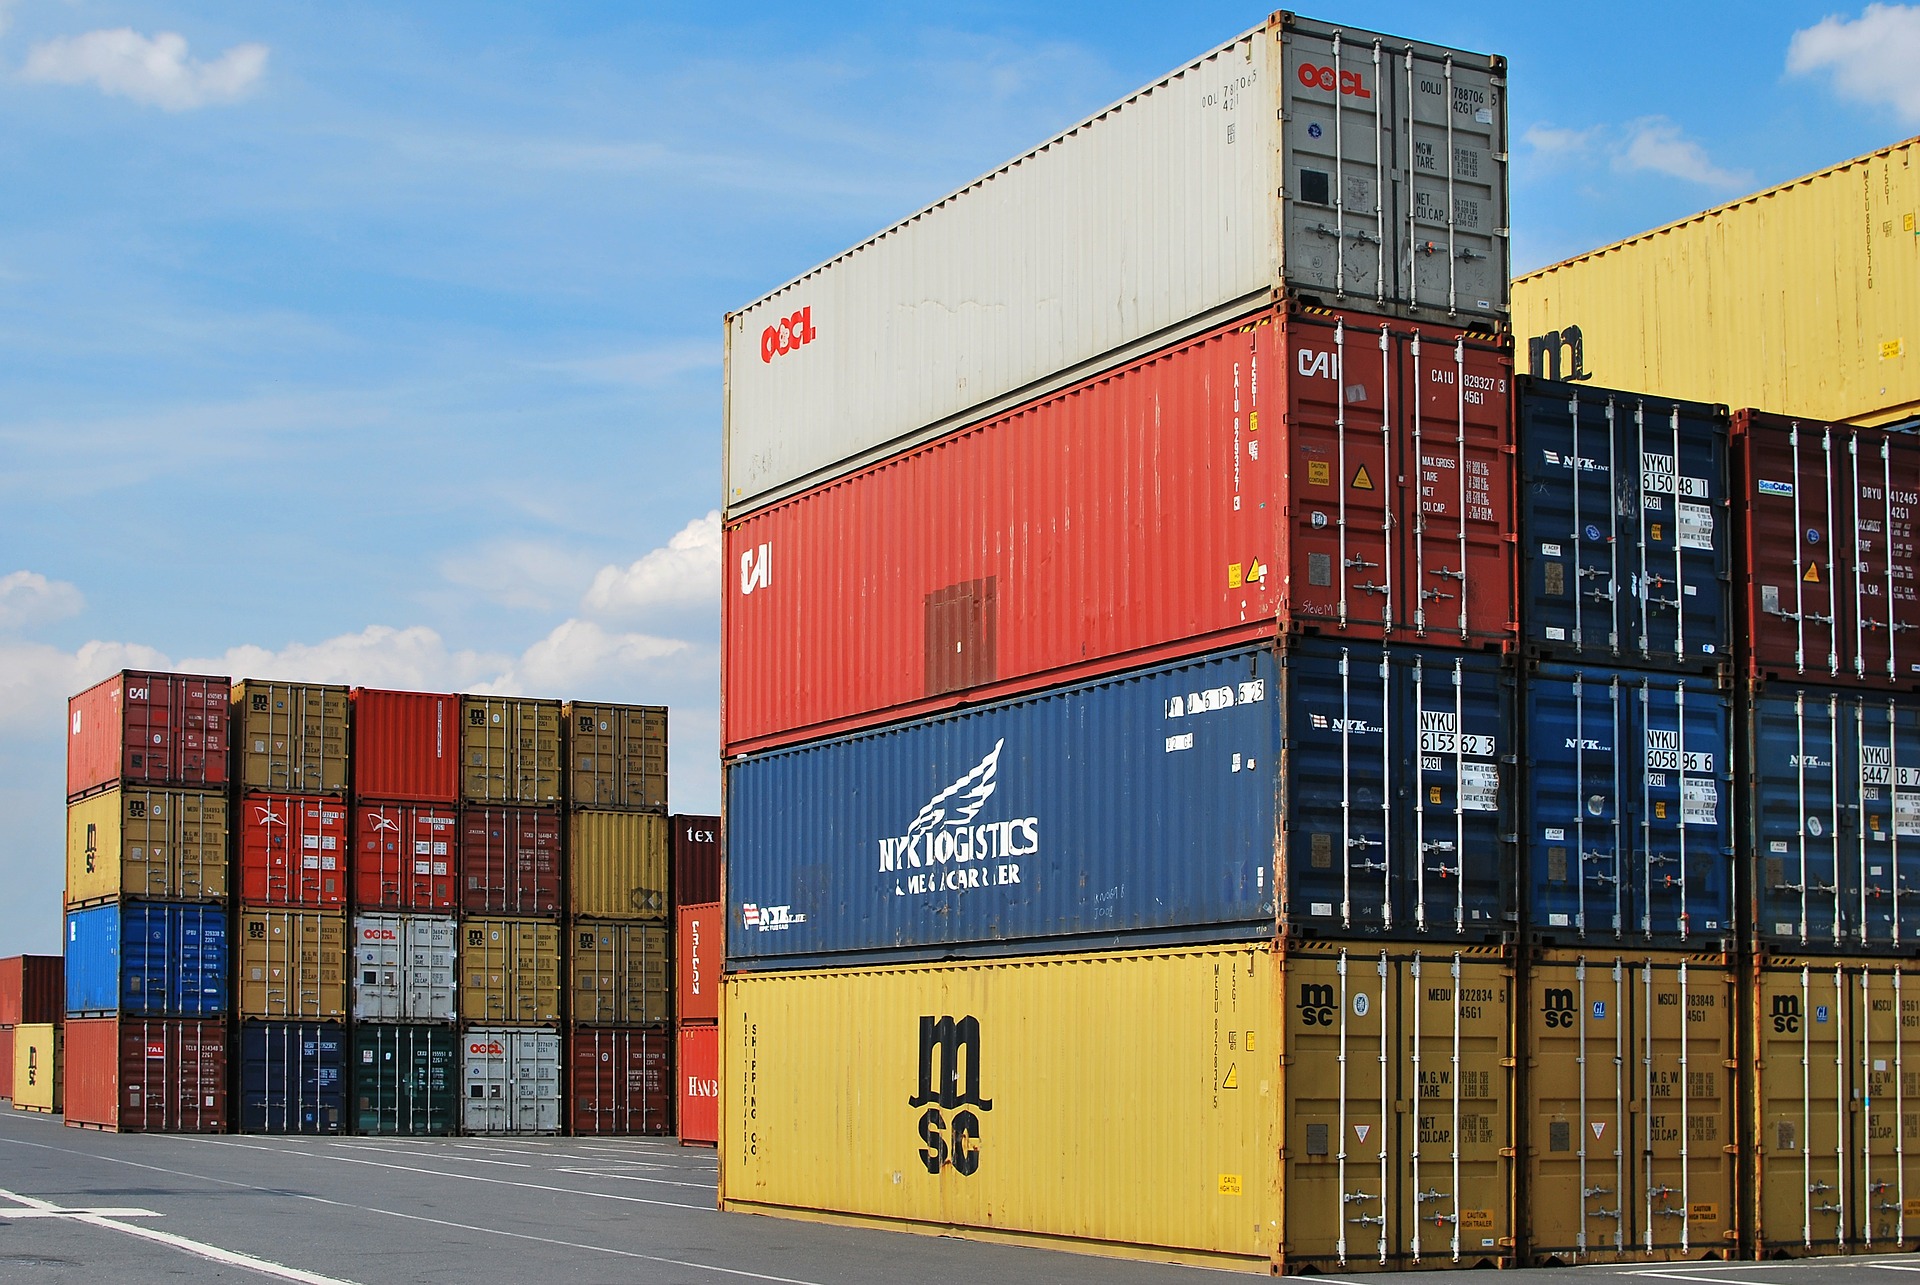 l-export-altoatesino-sfiora-il-10-di-crescita-nel-2015